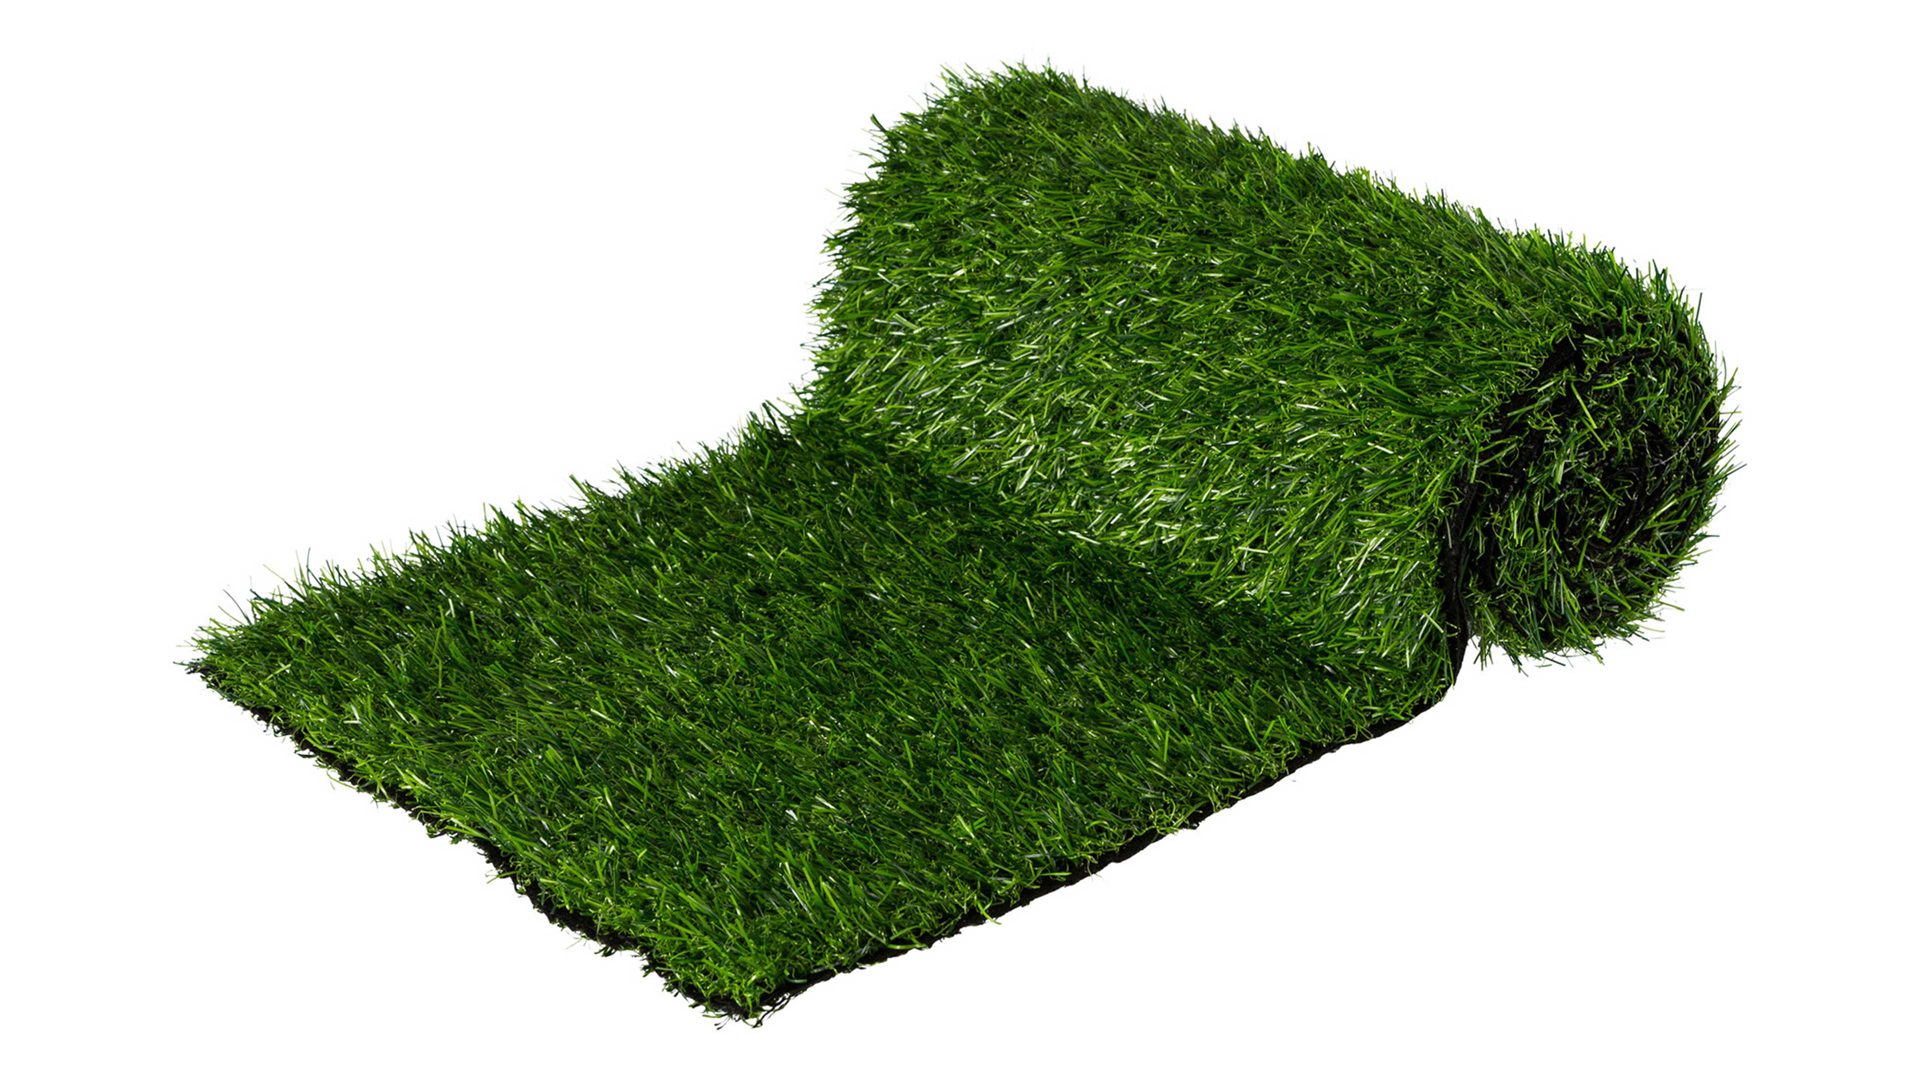 Tischdecke Gasper gmbh aus Kunststoff in Grün Gras-Tischläufer künstliches Gras – Länge ca. 180 cm